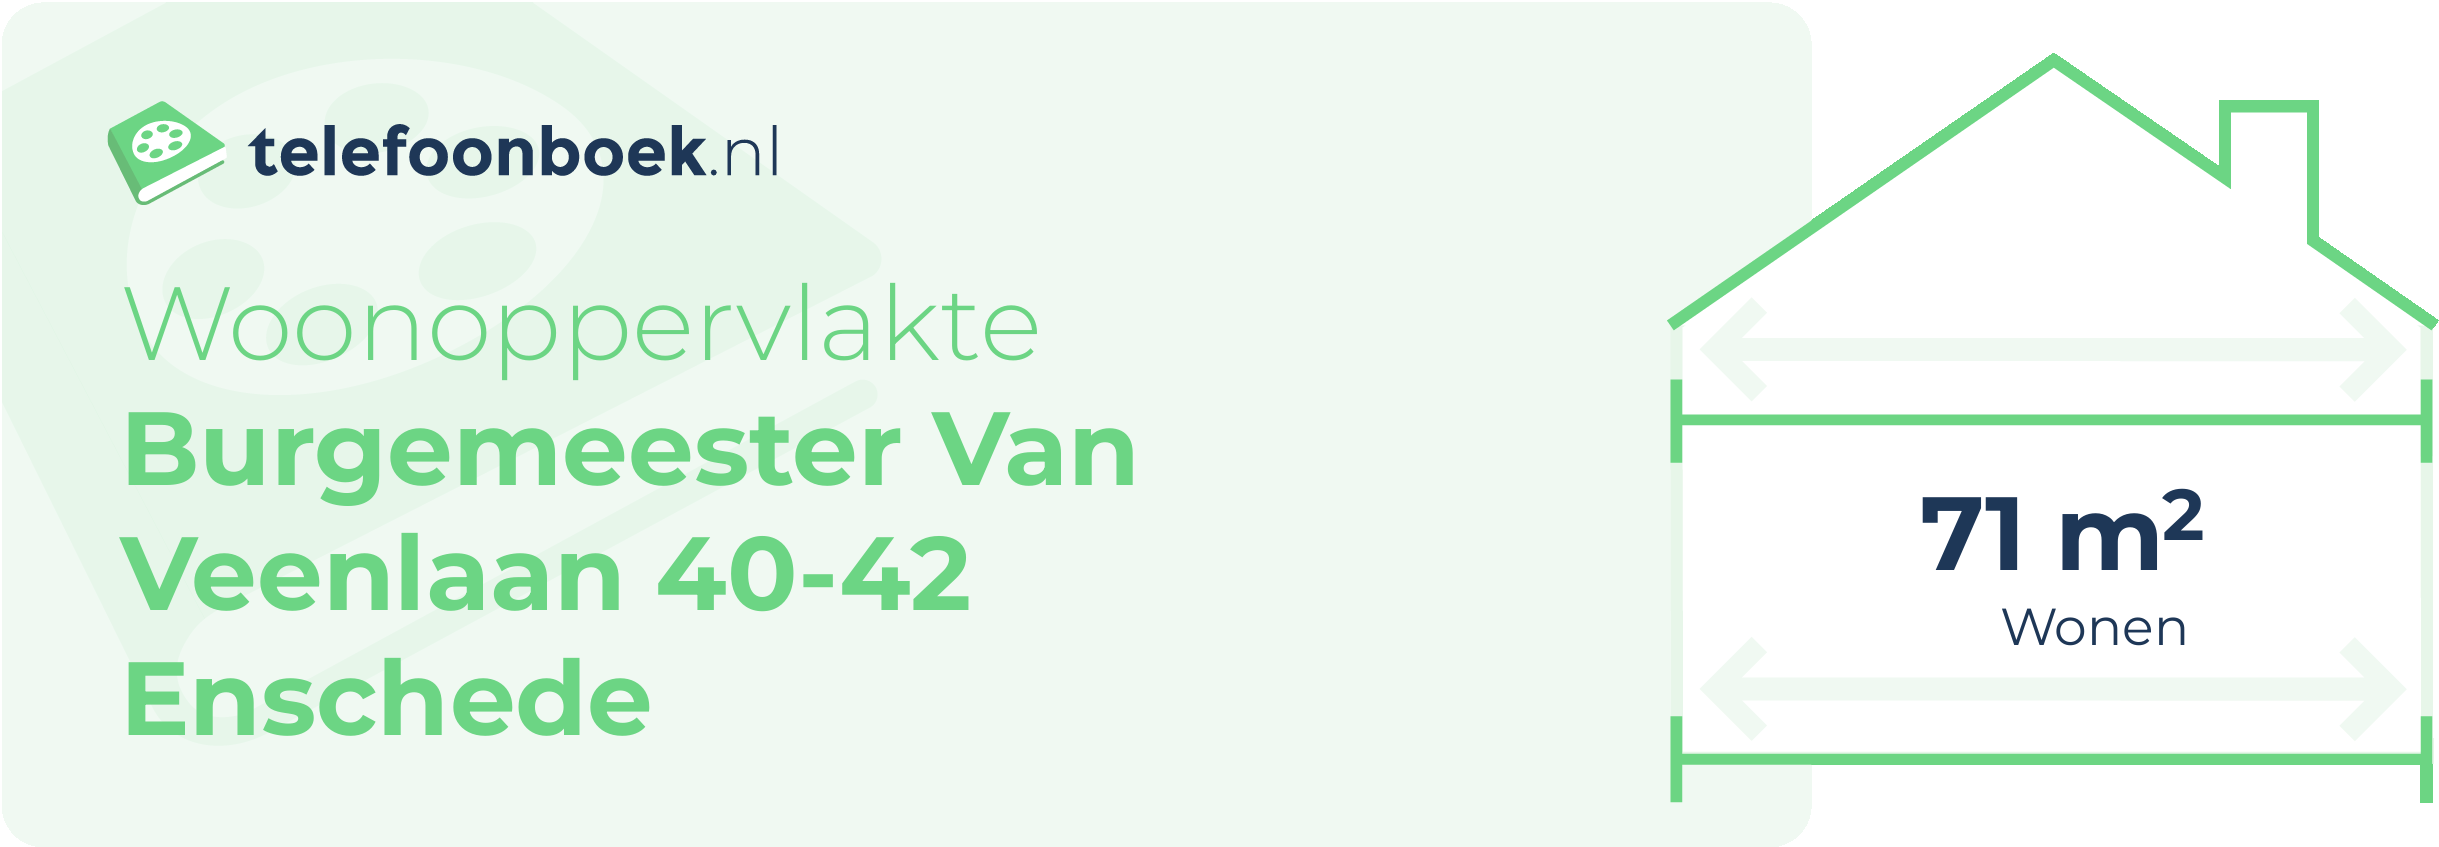 Woonoppervlakte Burgemeester Van Veenlaan 40-42 Enschede